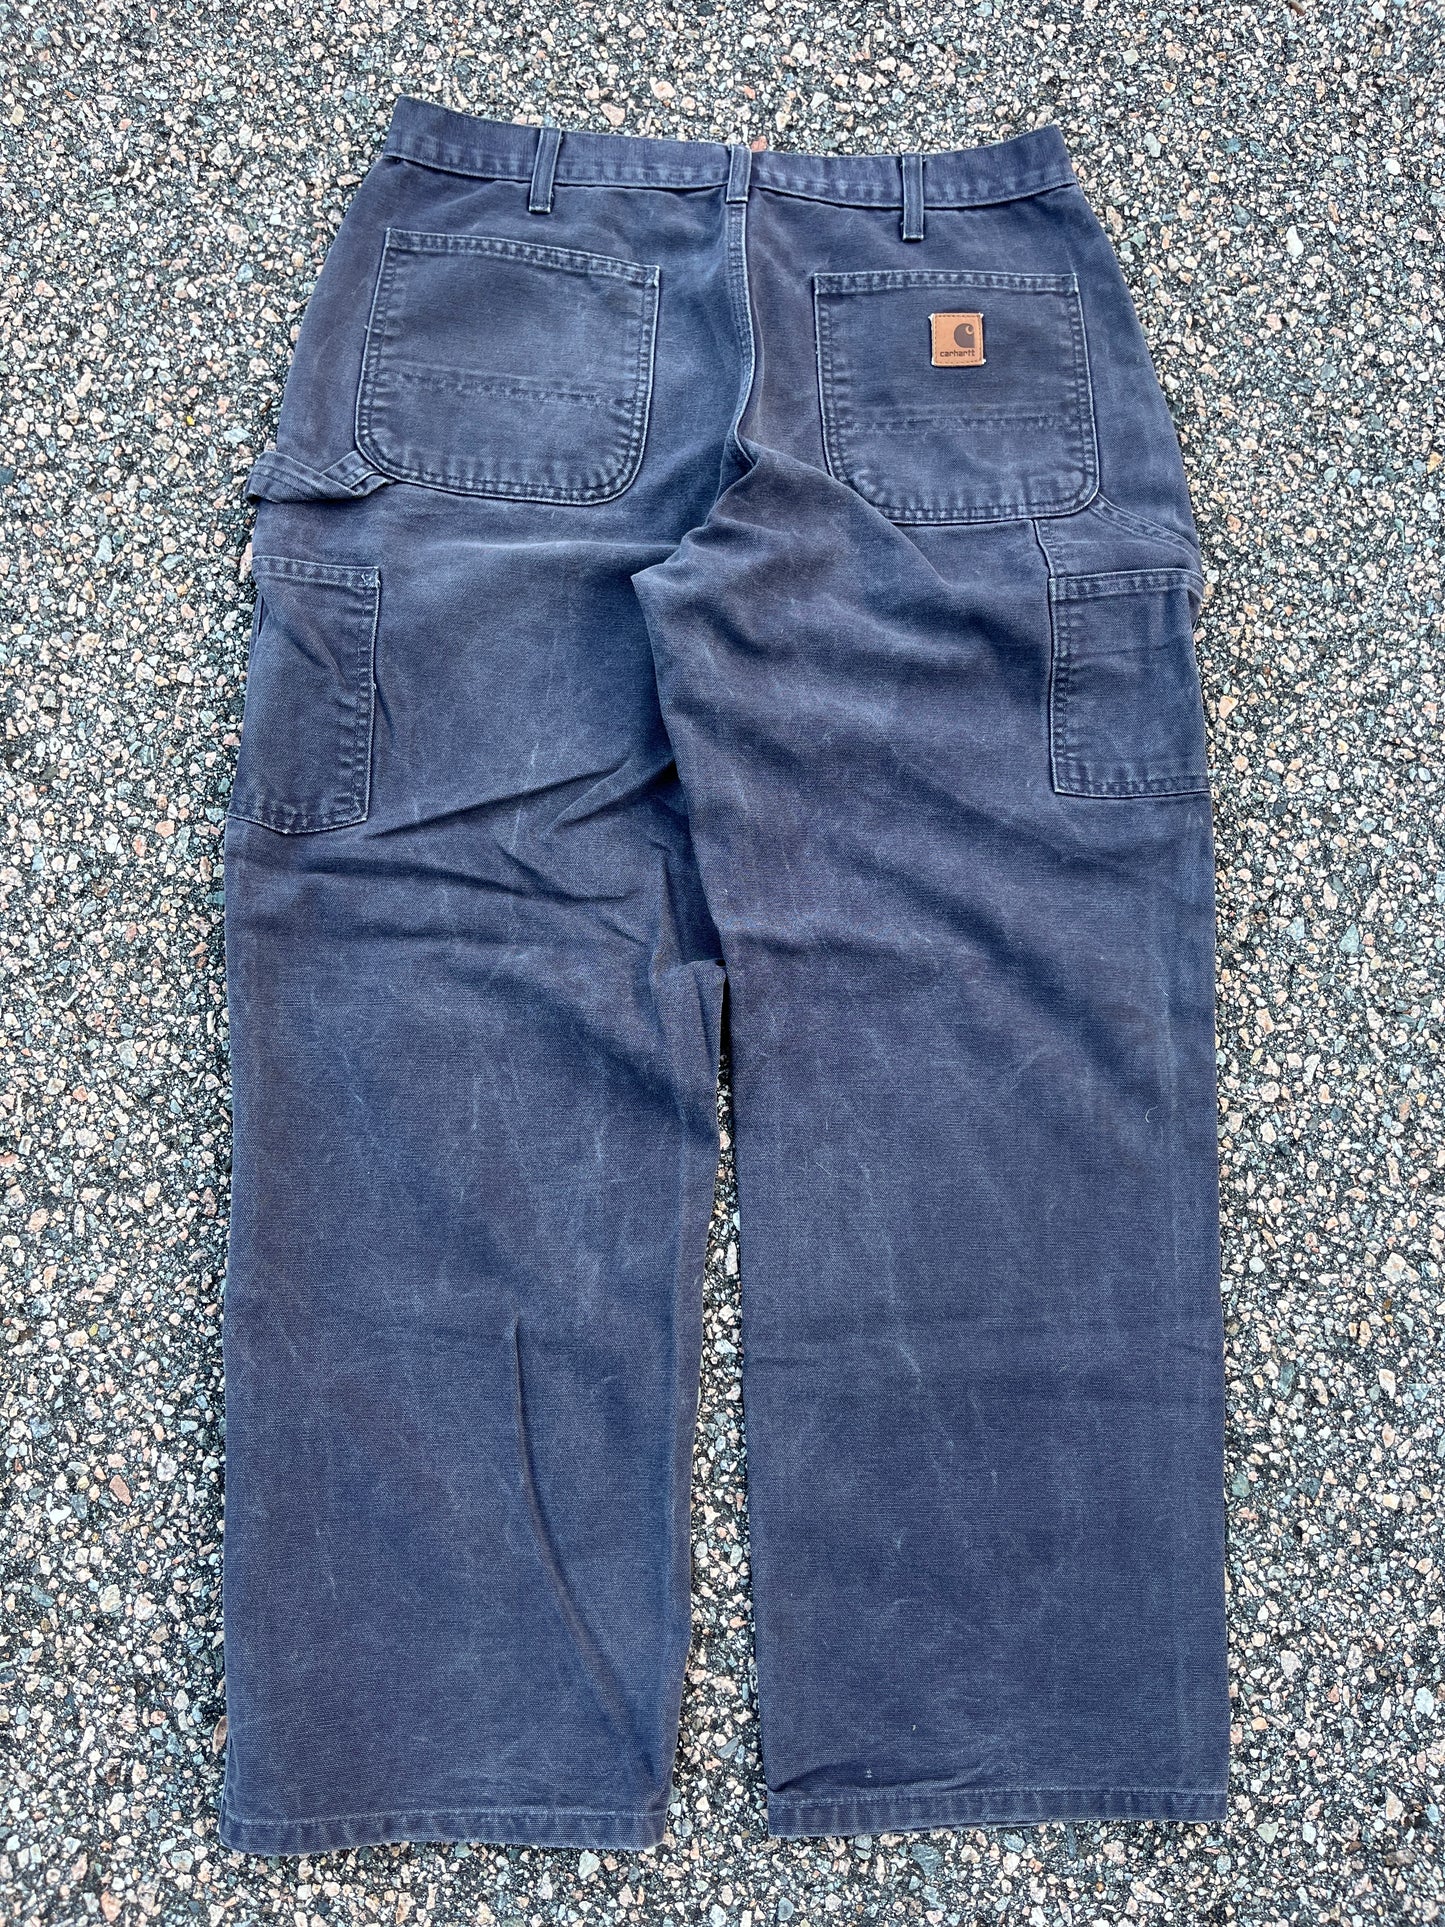 Faded Petrol Blue Carhartt Carpenter Pants - 33 x 29